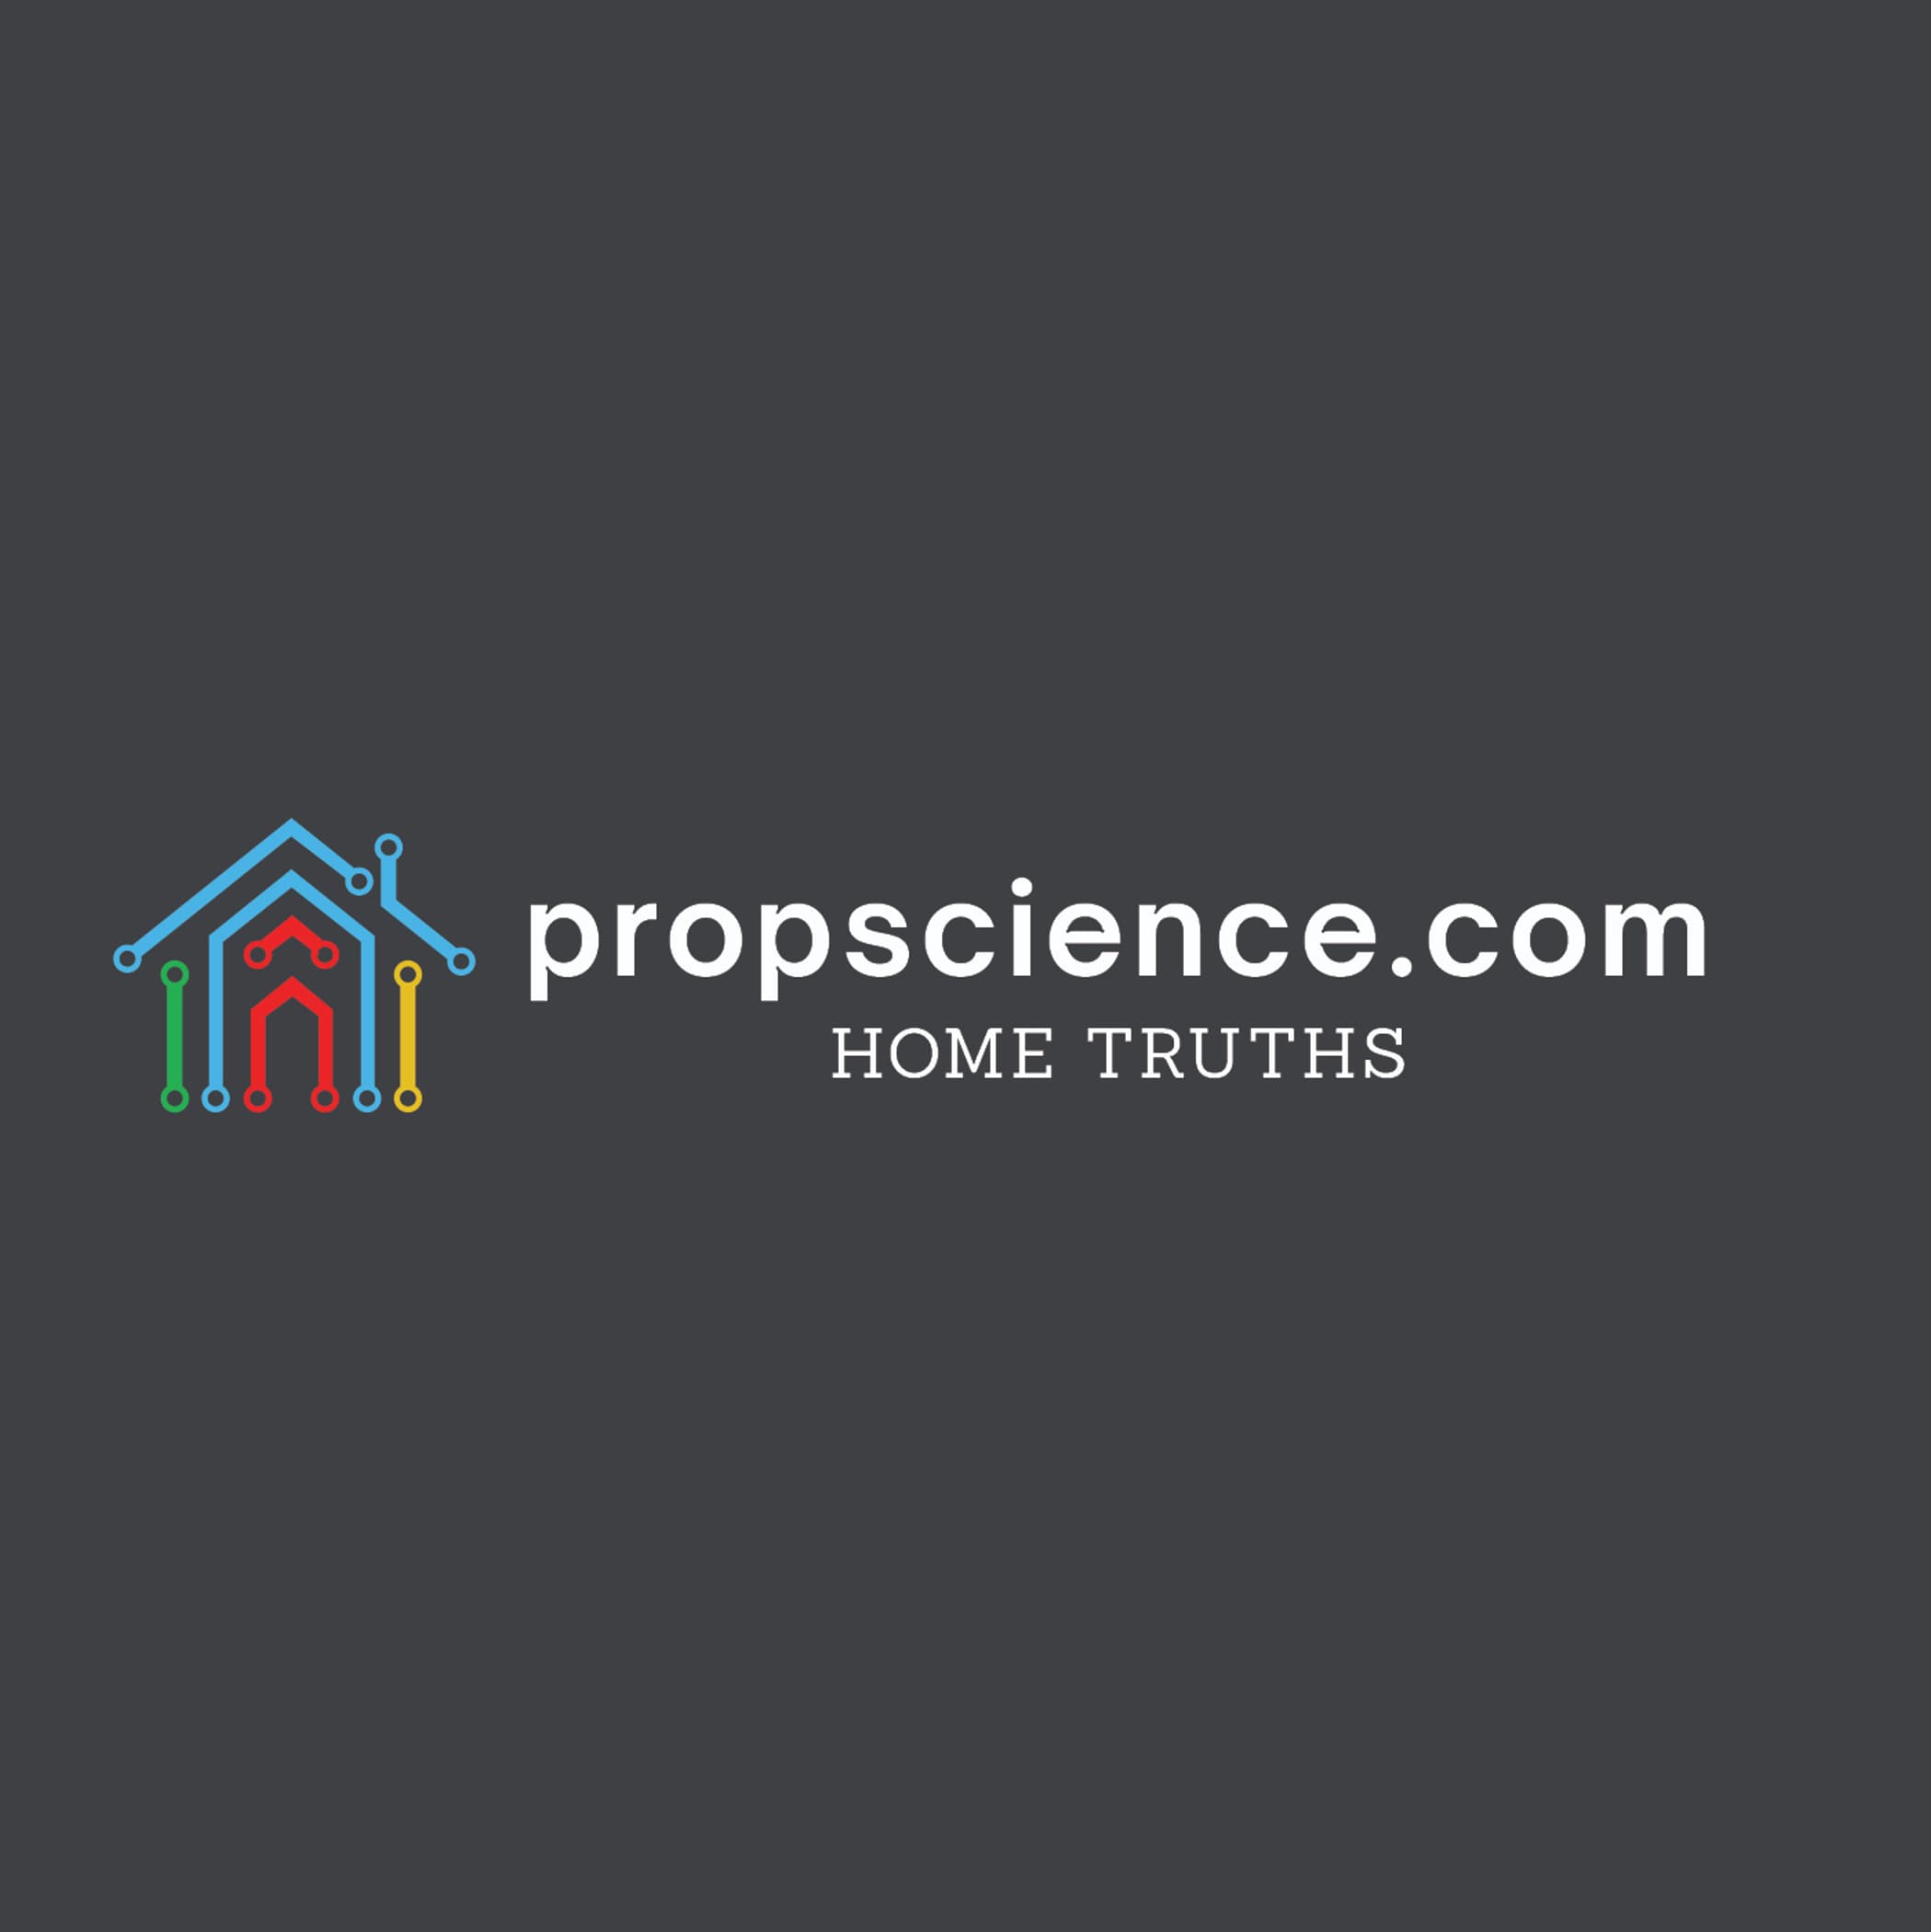 Propscience.com's logo